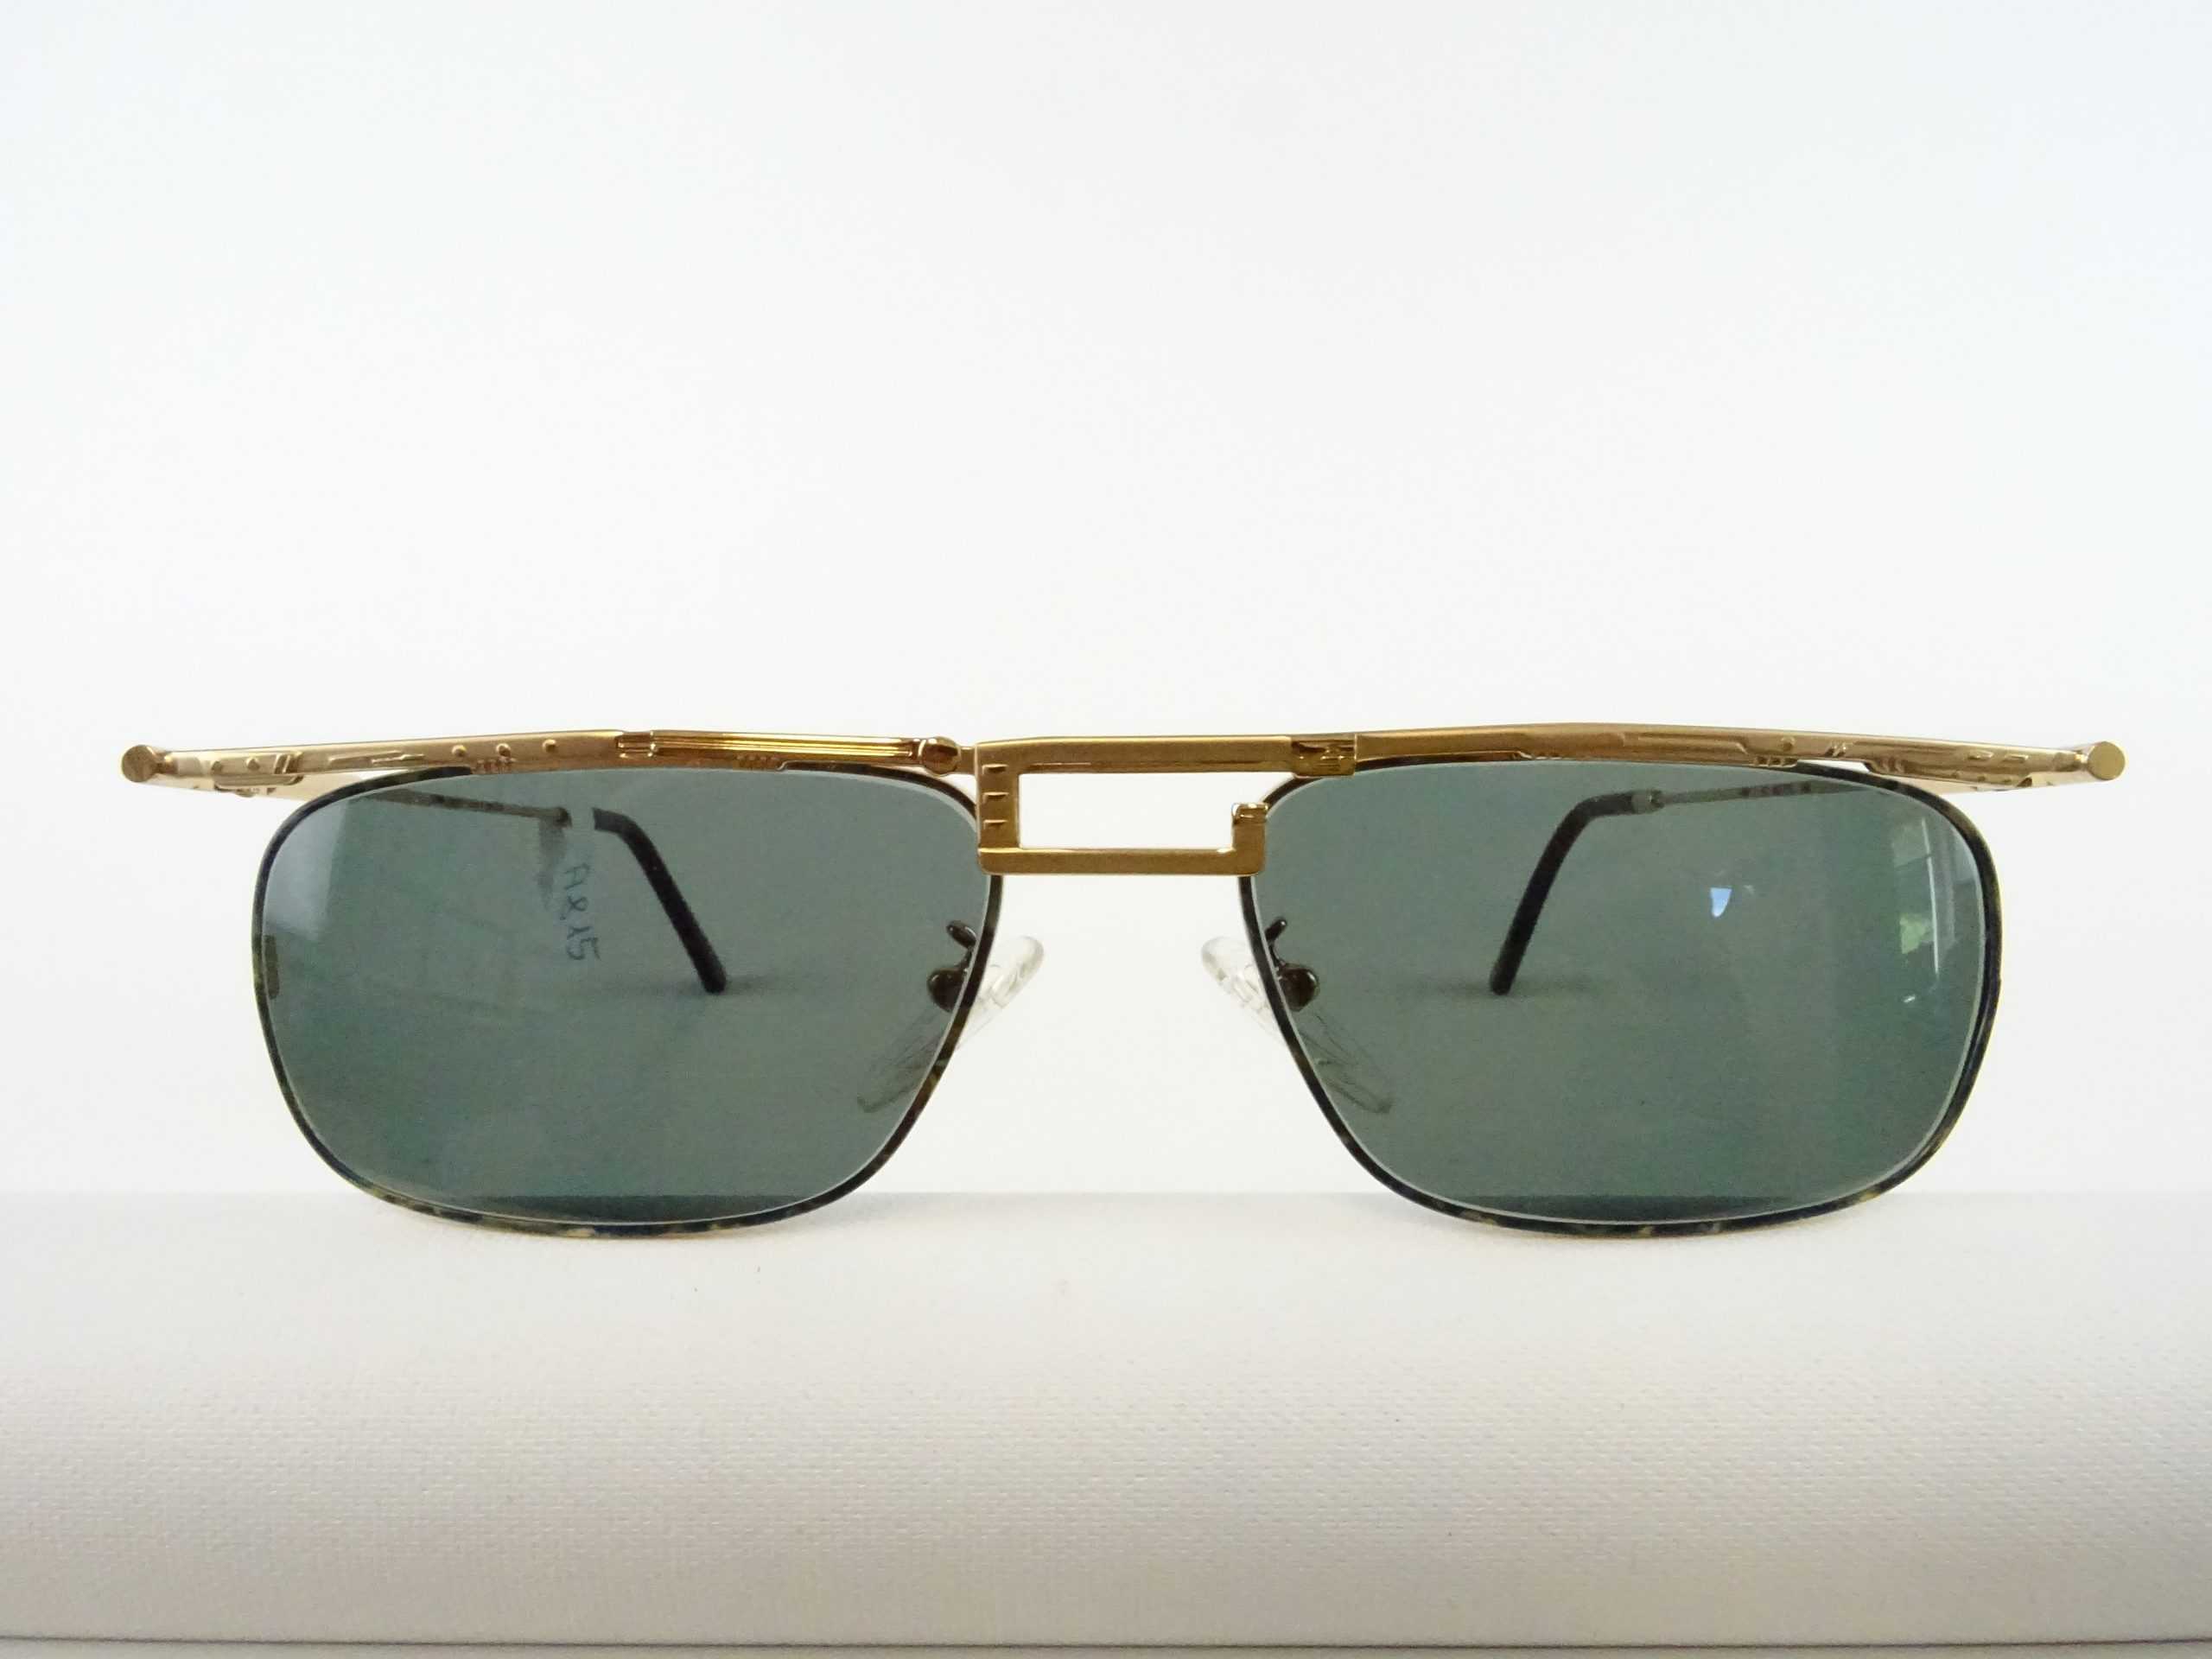 Herren-Sonnenbrille Chai/Italy UV Gr. Balkenbrillen – Gläser Vintage Schutz Welt Brillen L getönte große/breite Kopfform mit